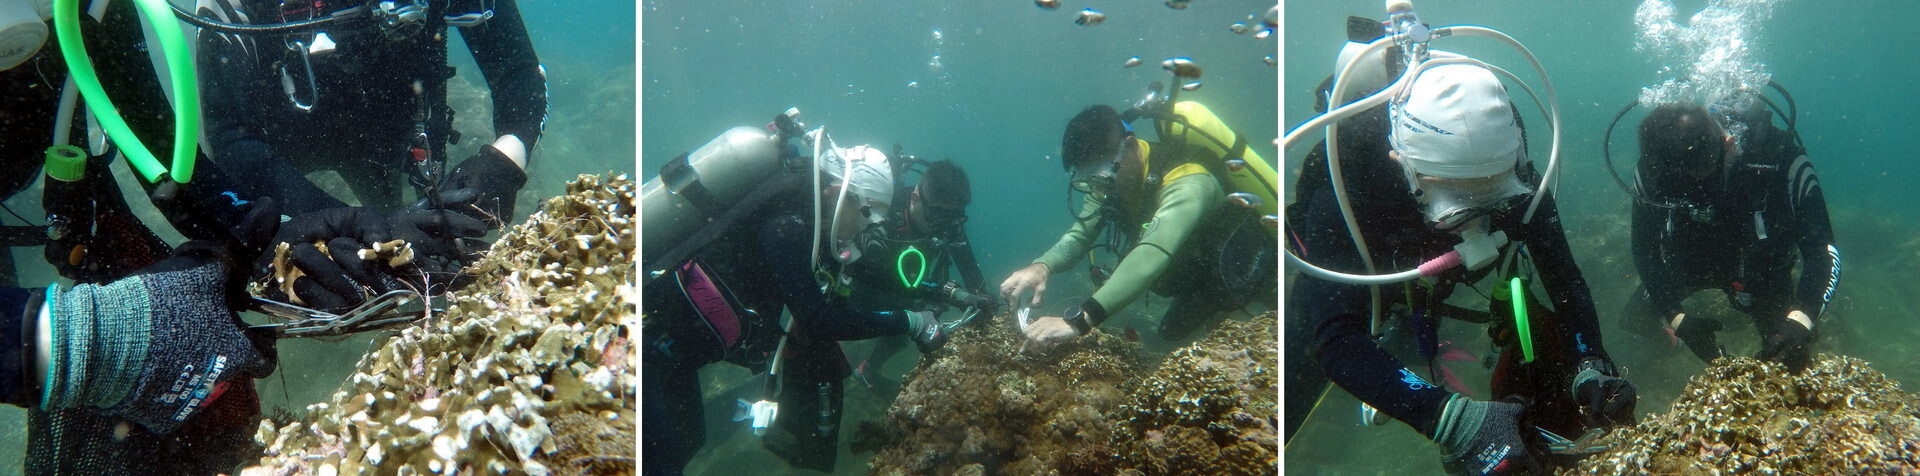 潛水教練清除珊瑚上的釣魚線